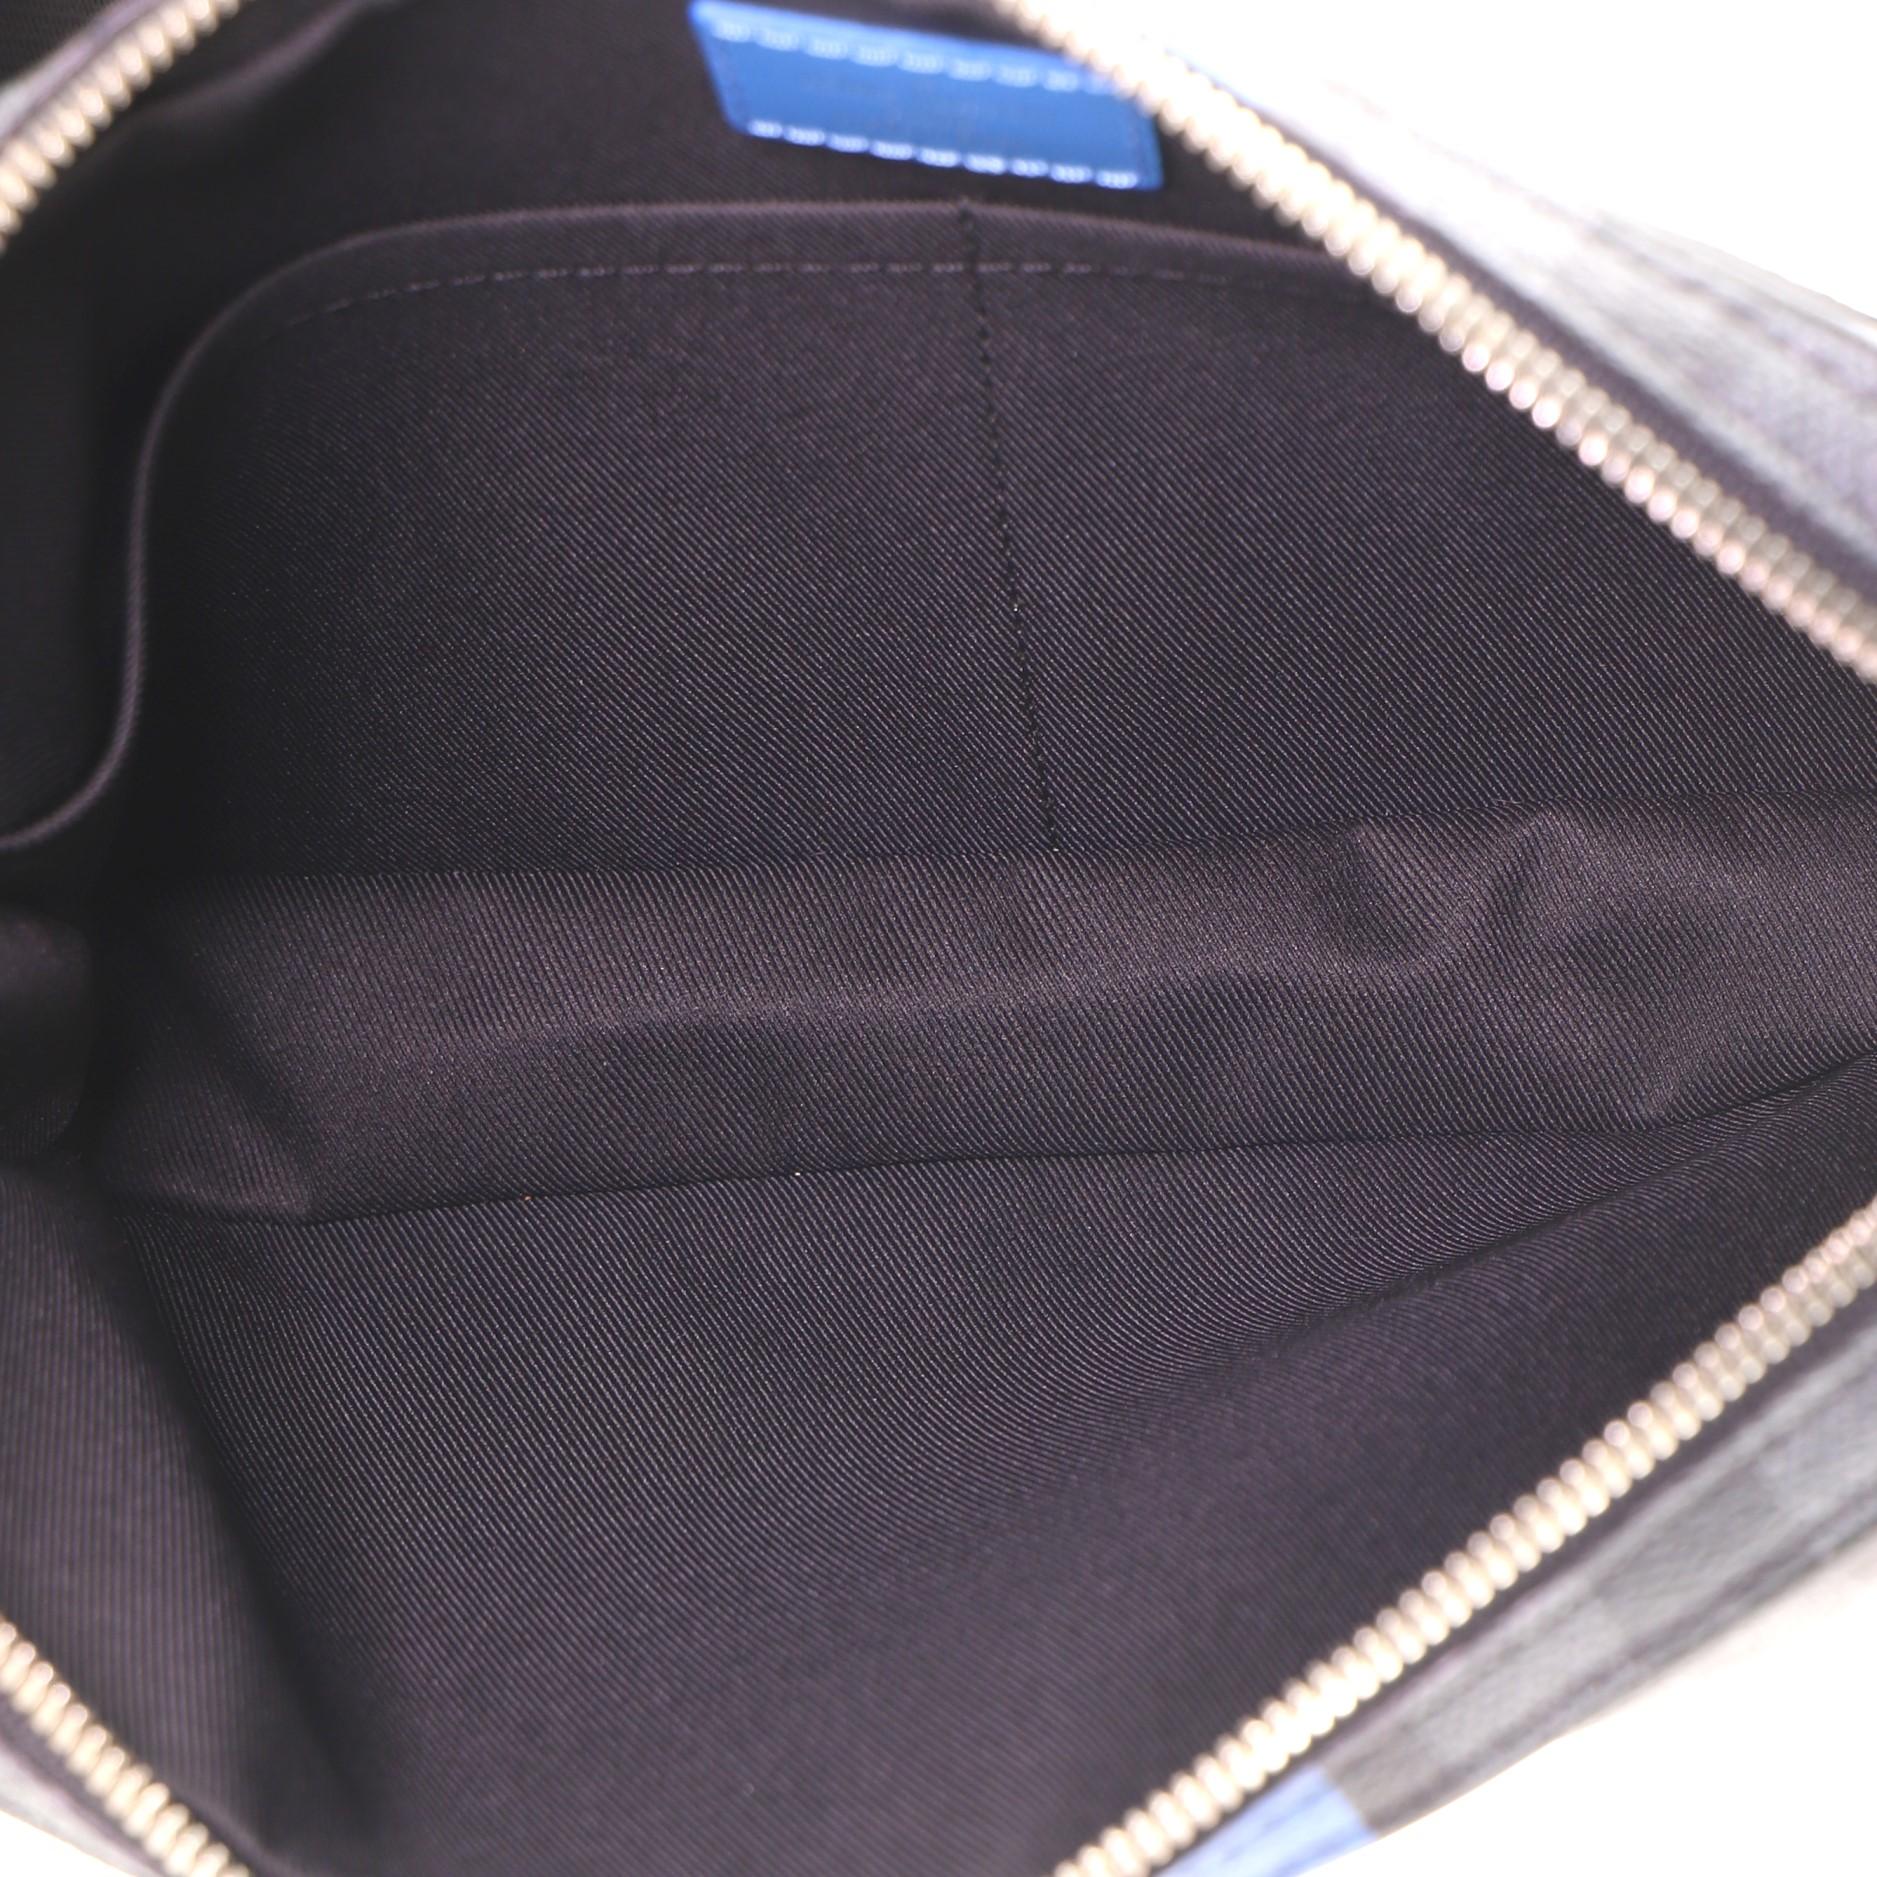 Black Louis Vuitton Alpha Messenger Bag Limited Edition Damier Graphite Giant